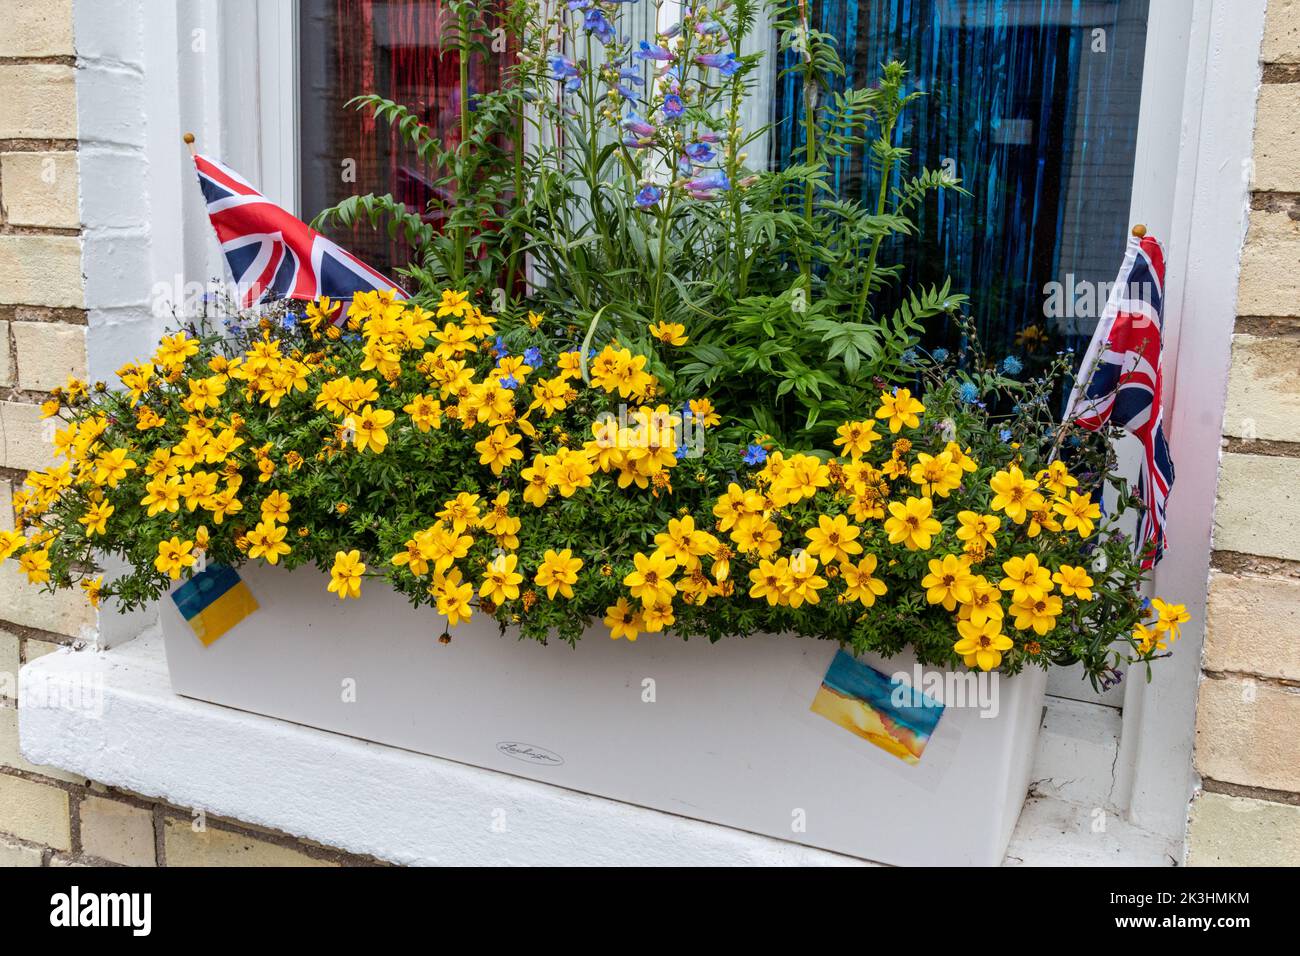 Una finestra con bandiere gialle e blu in solidarietà con l'Ucraina e una tenda rossa, bianca e blu e prese d'Unione per il Queens Platinum Jubilee. Foto Stock